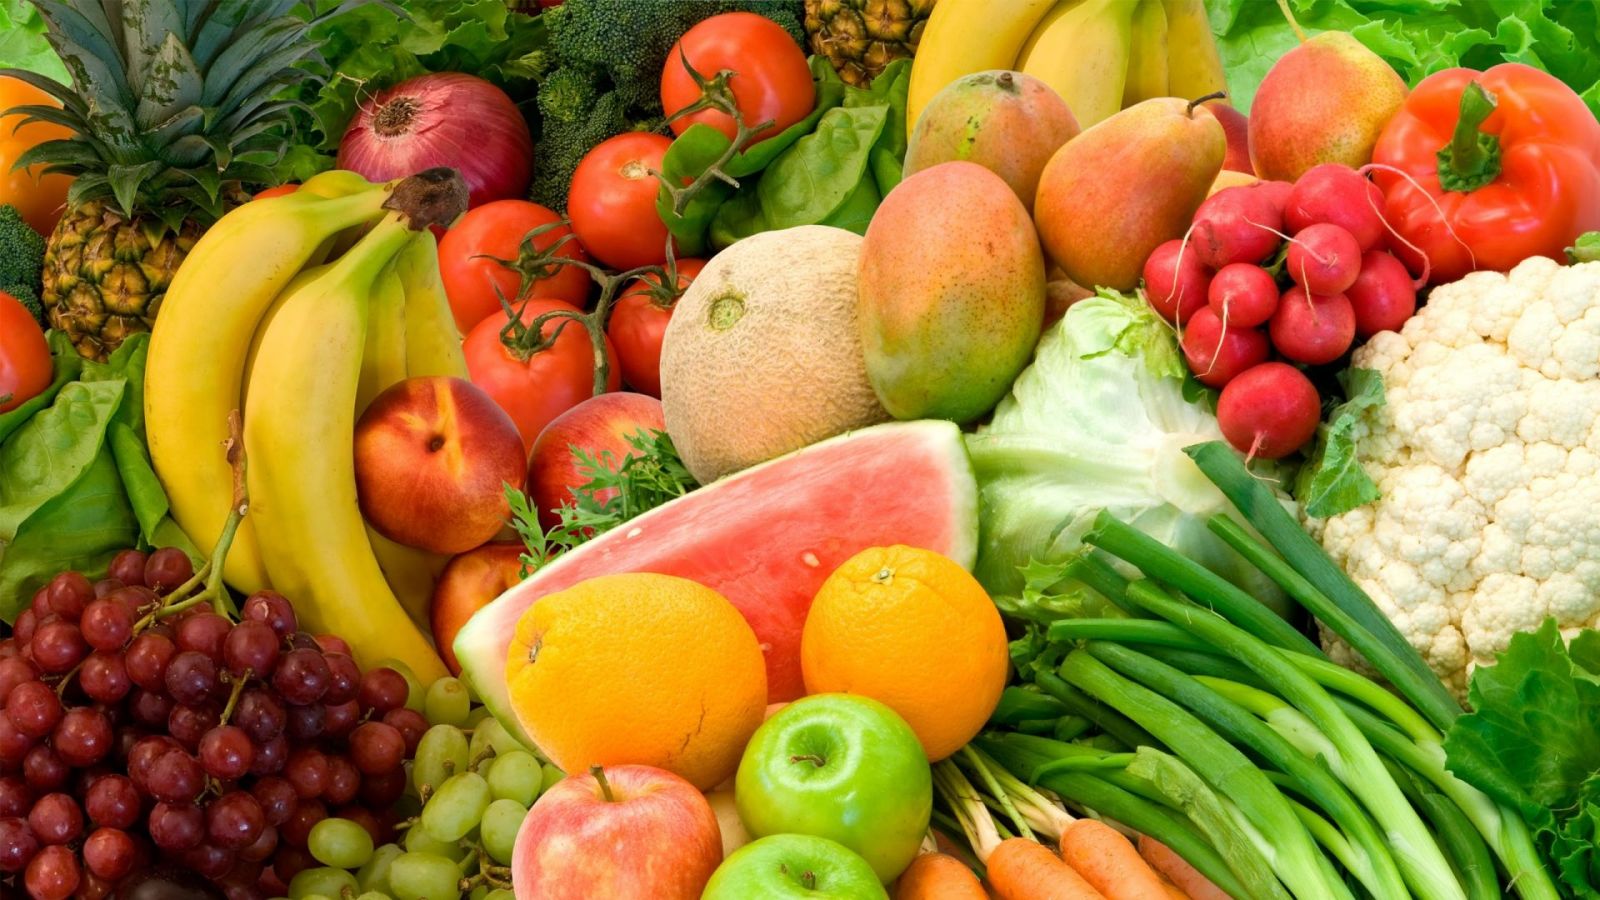 Hưng Yên kí thỏa thuận xuất khẩu trái cây sang Trung Quốc trị giá 45 tỉ đồng